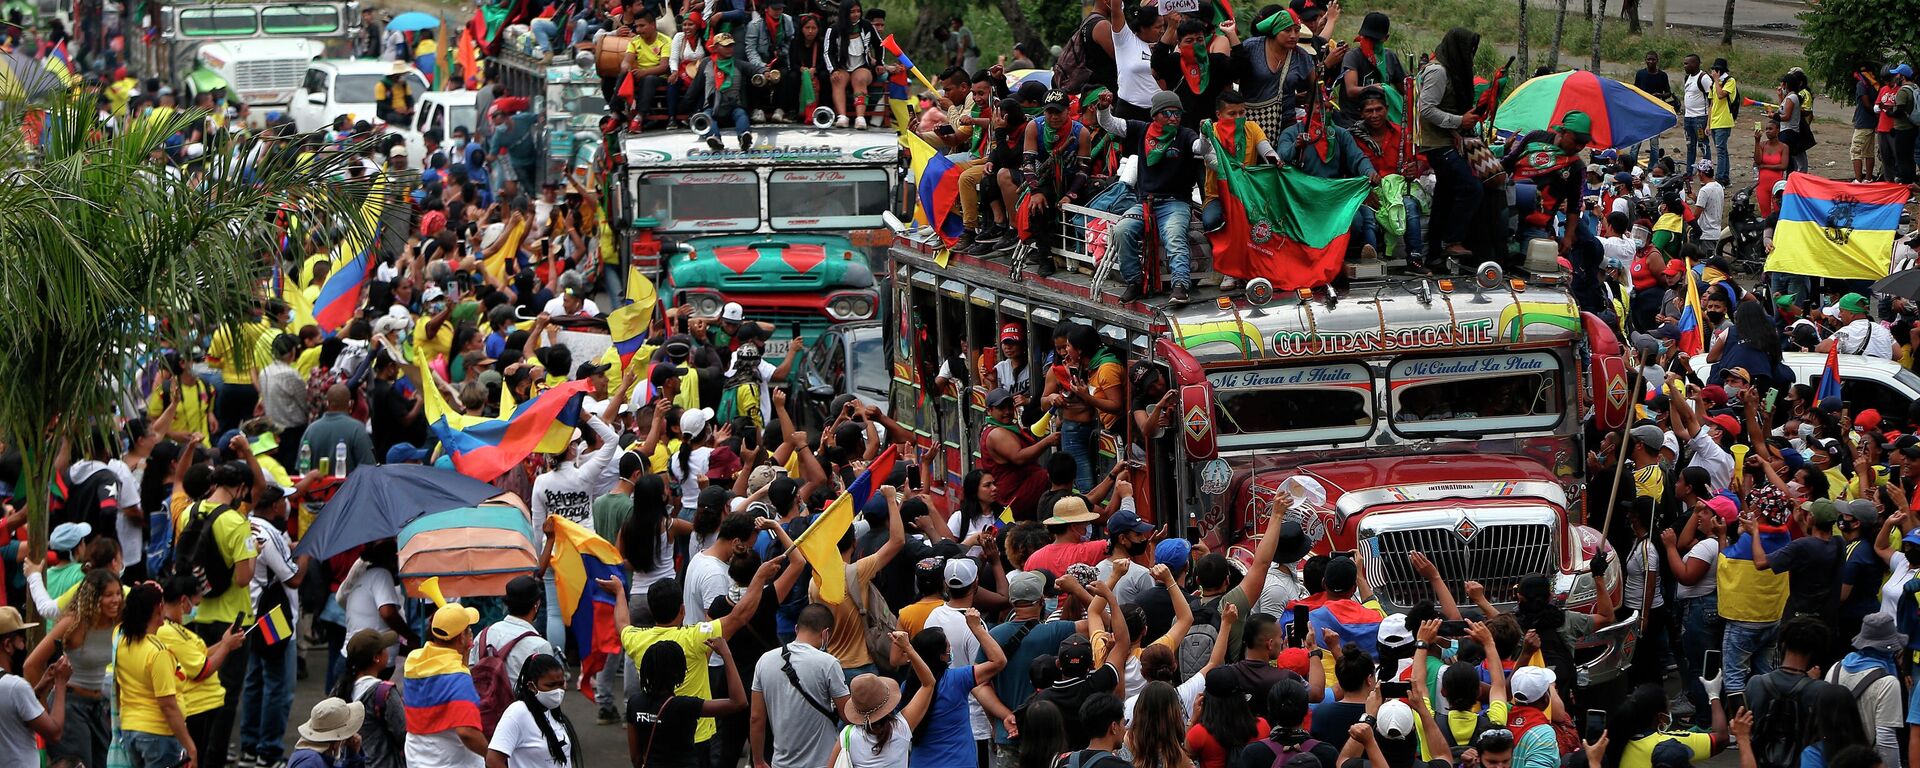 Manifestantes indígenas asisten a una marcha antigubernamental en Cali, Colombia, el miércoles 12 de mayo de 2021 - Sputnik Mundo, 1920, 17.10.2021